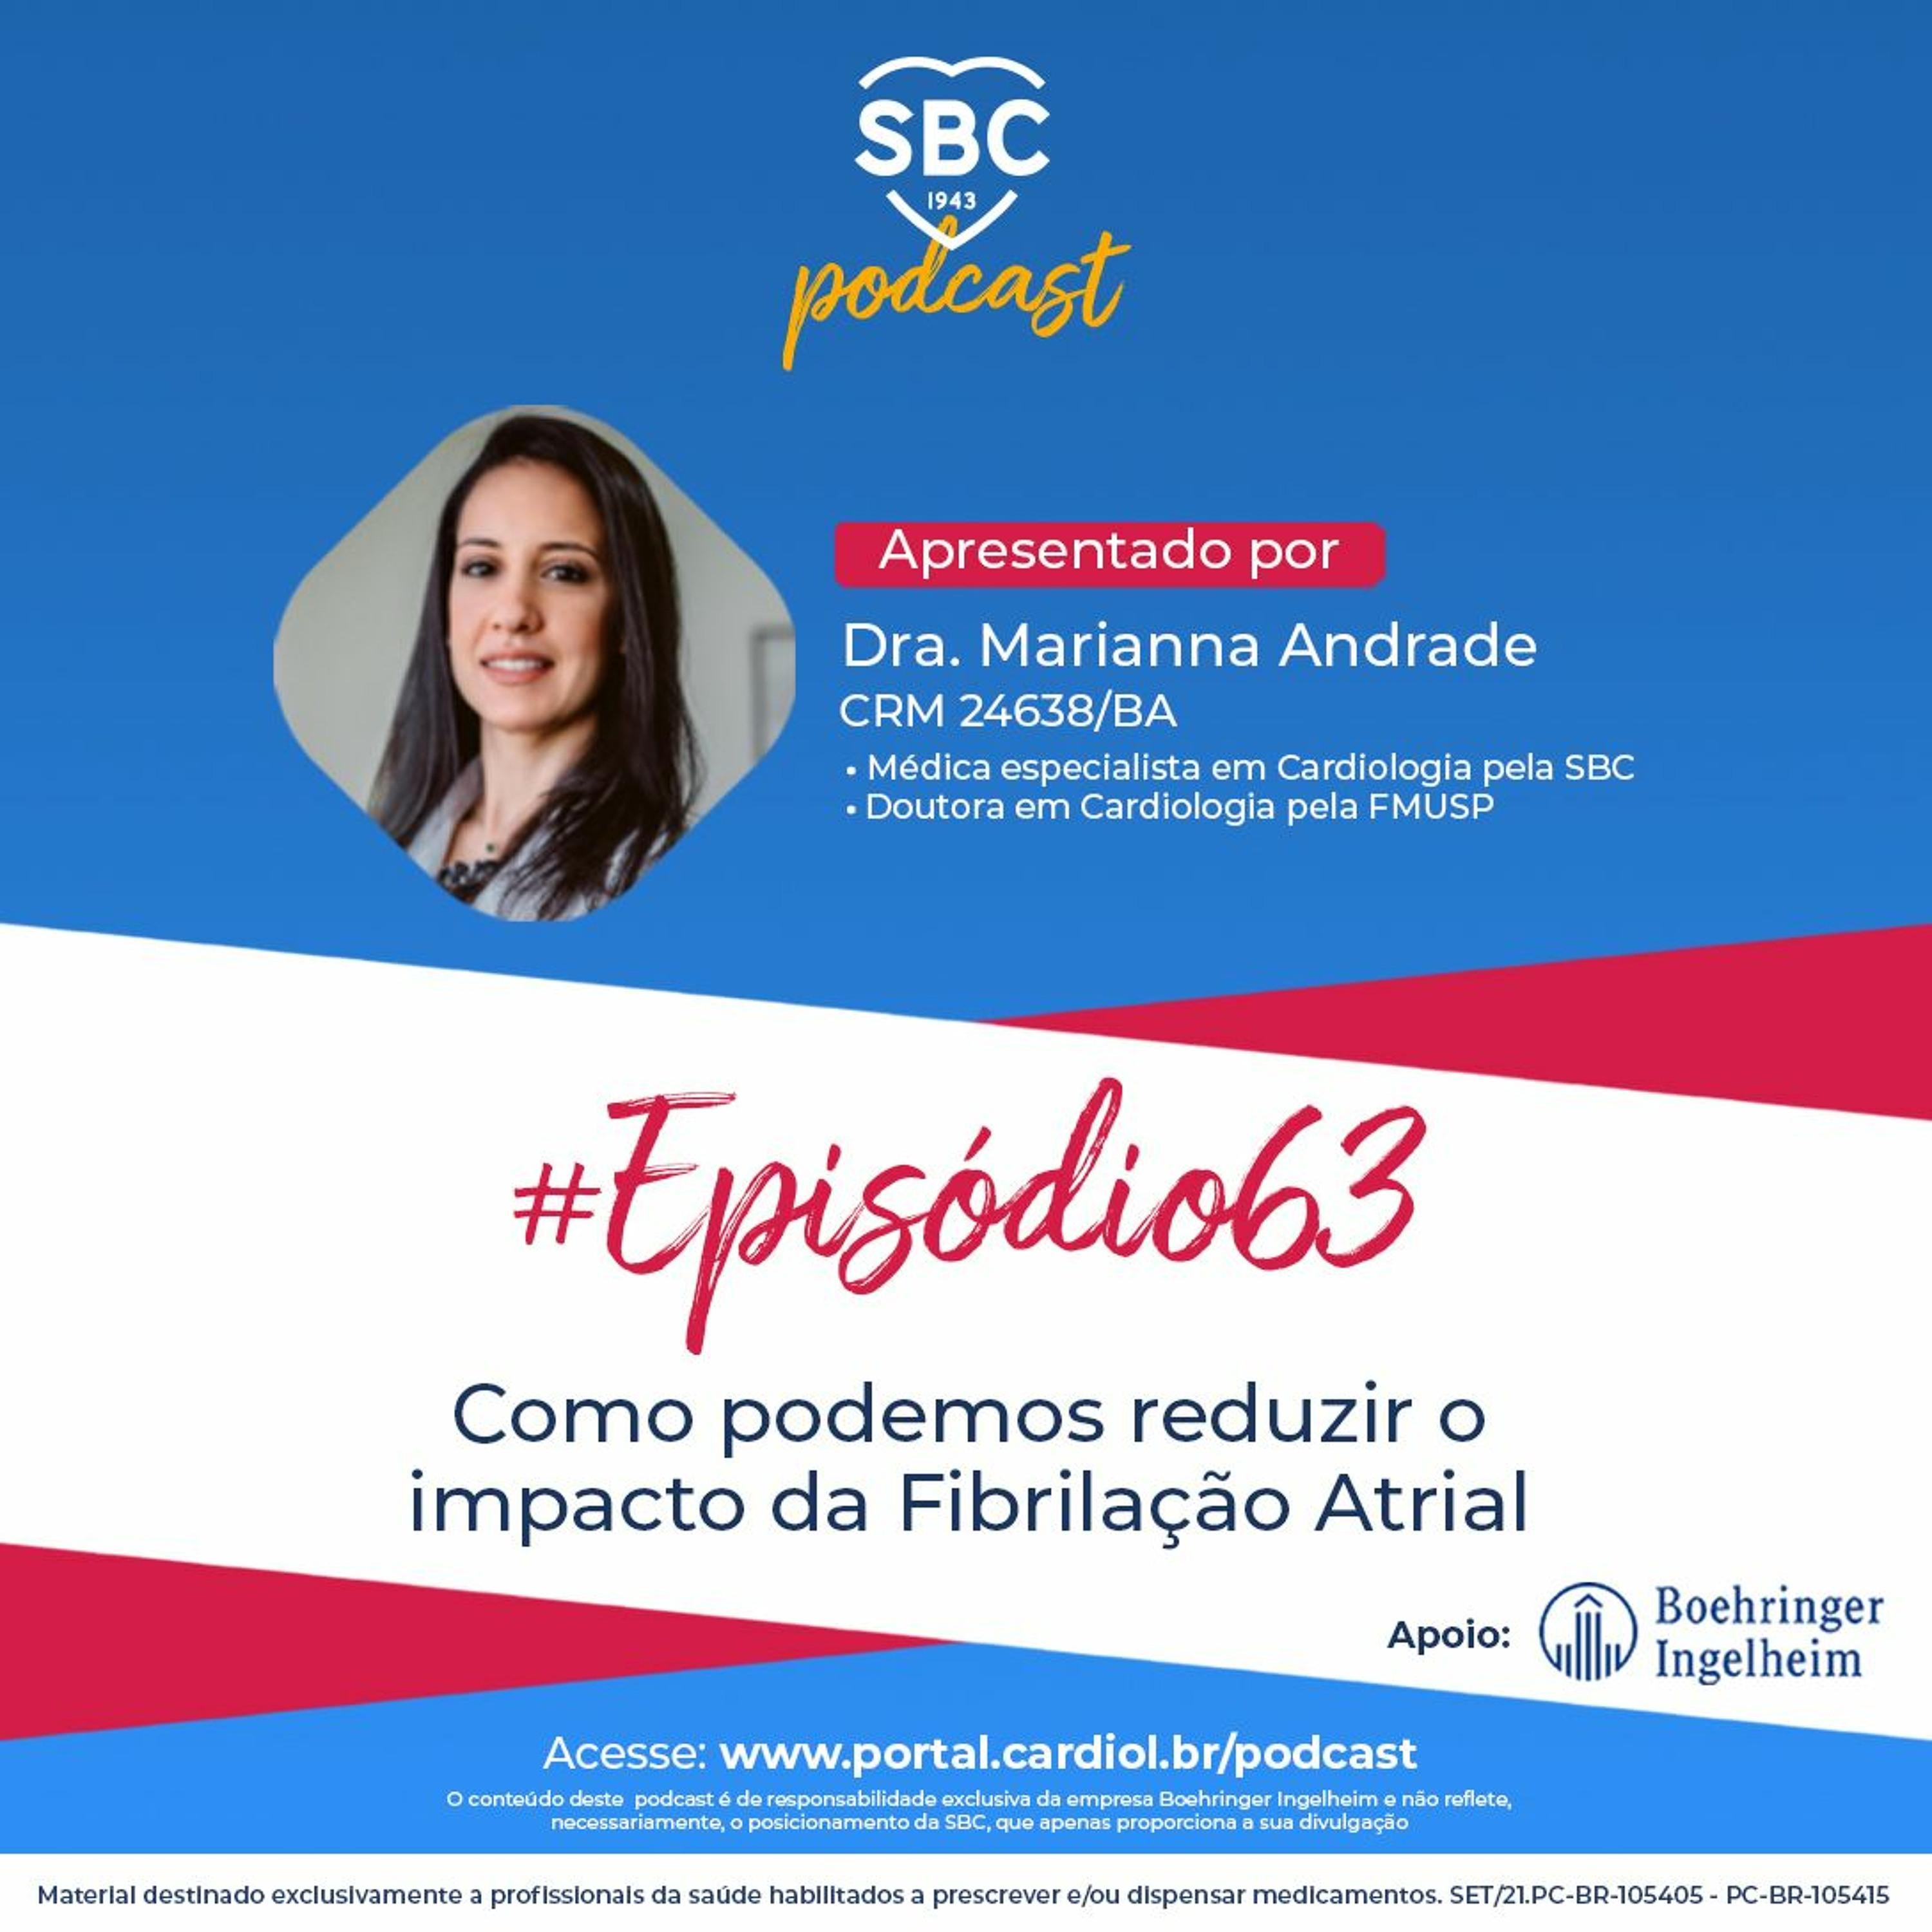 Podcast SBC 063 - Como podemos reduzir o impacto da Fibrilação Atrial by SBC - Sociedade Brasileira de Cardiologia